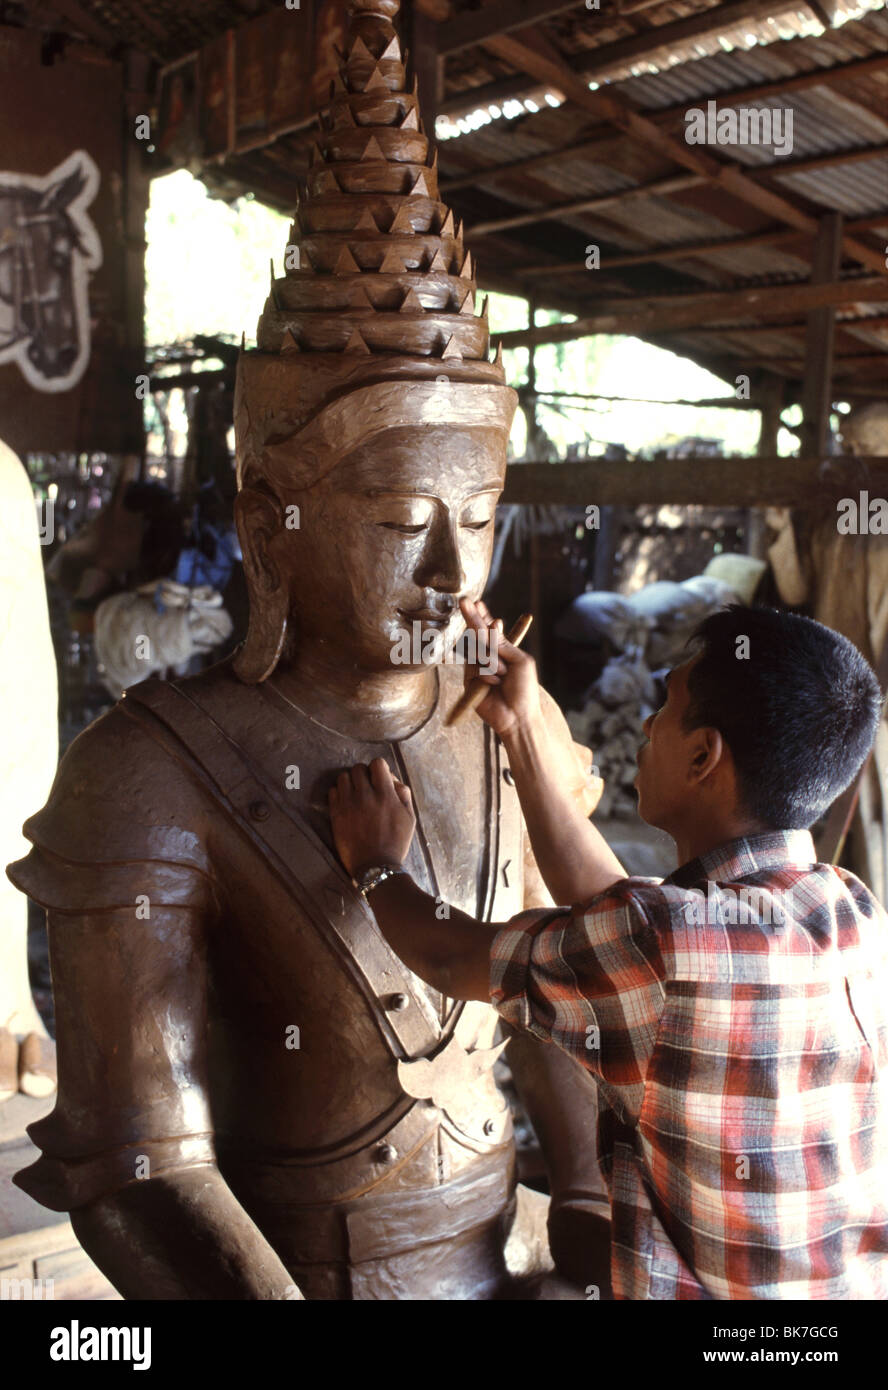 Uno scultore la realizzazione di una immagine di cera prima della fusione in bronzo. Mandalay, Myanmar (Birmania), Asia Foto Stock